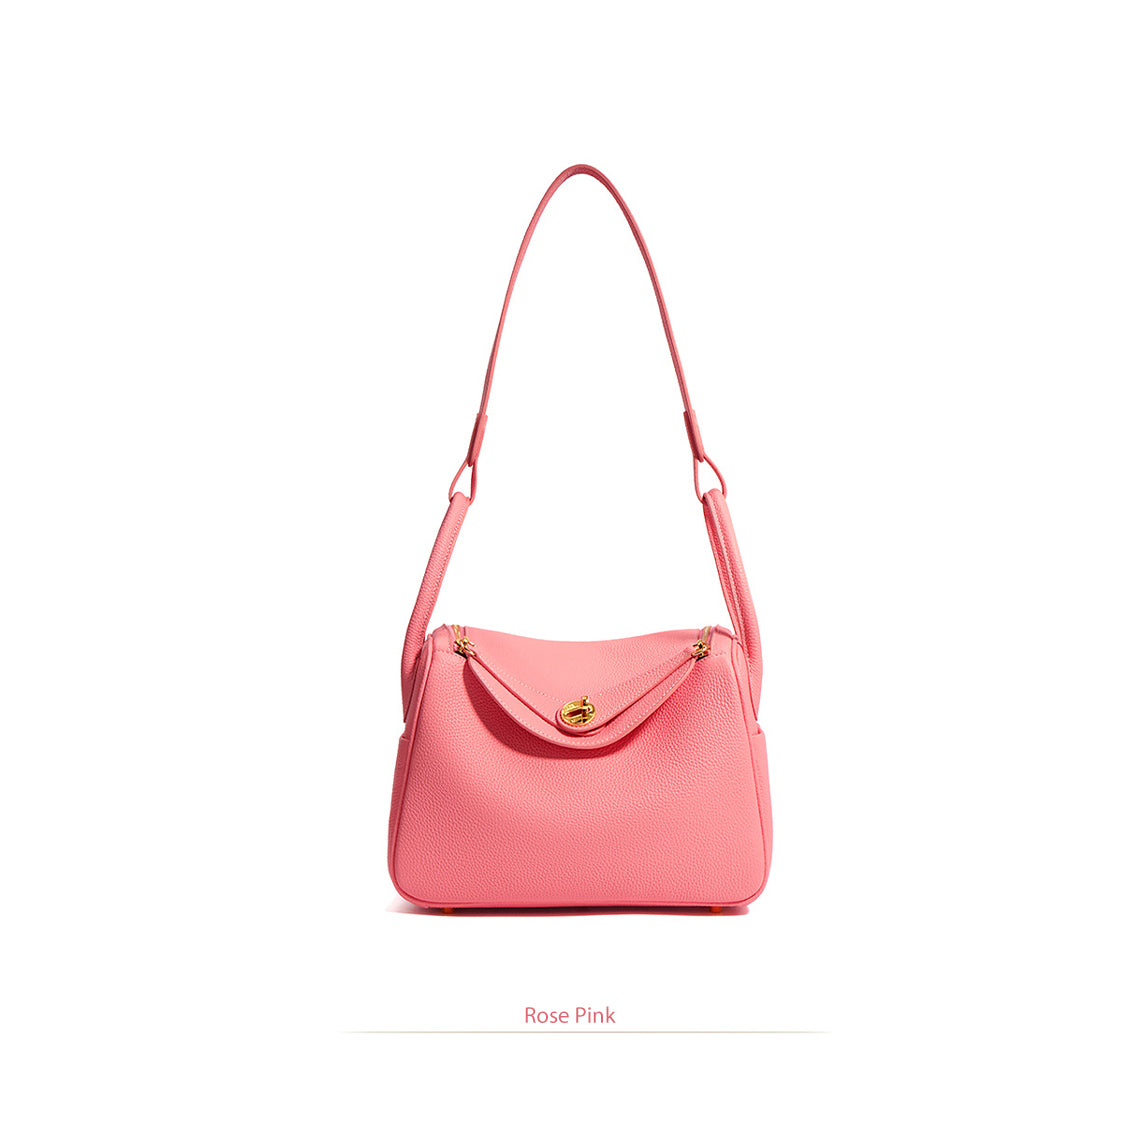 Rose Pink Leather Handbag | Inspired Leather Lindy Handbag in Rose Pink - POPSEWING™